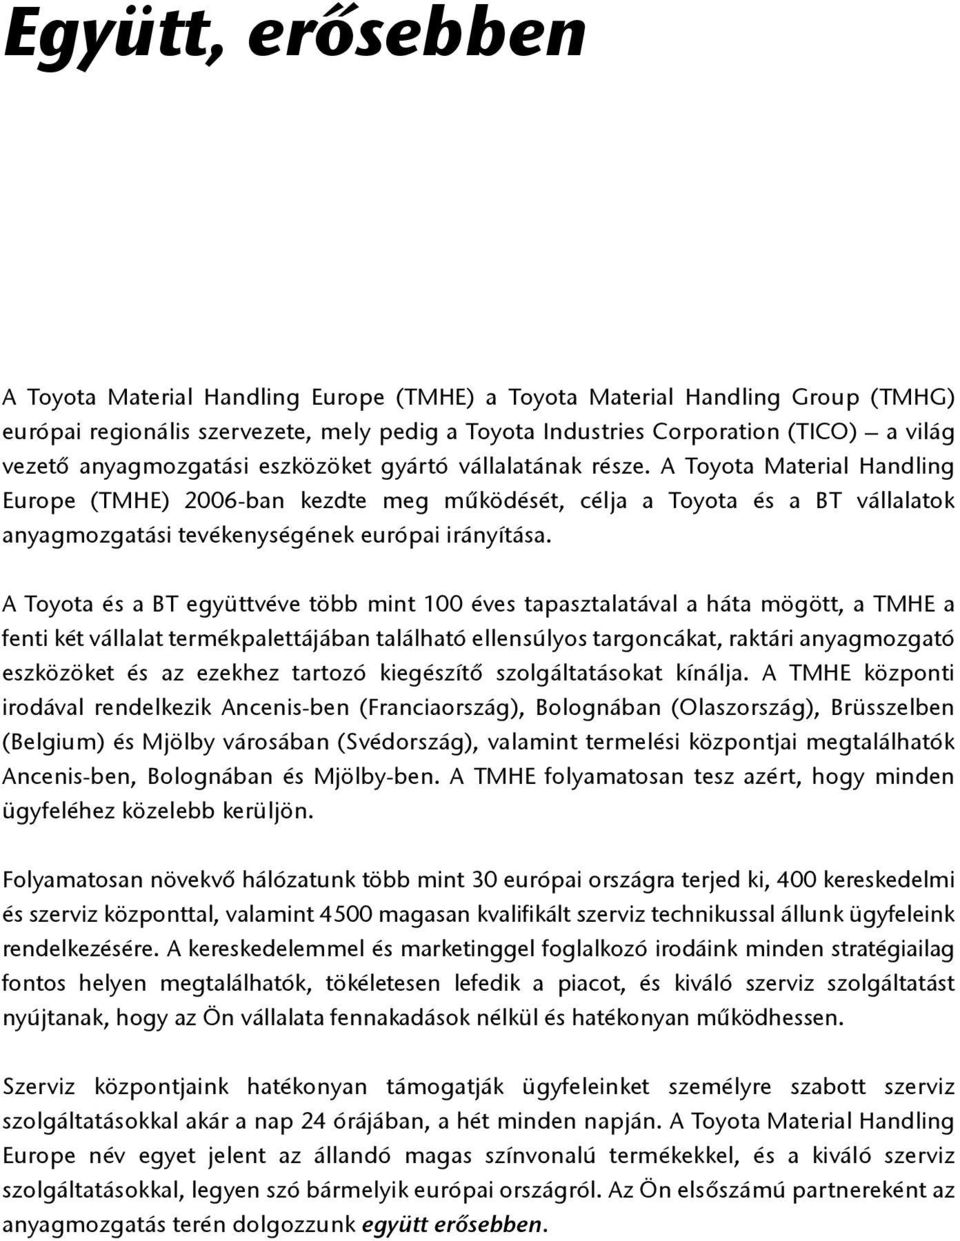 A Toyota Material Handling Europe (TMHE) 2006-ban kezdte meg működését, célja a Toyota és a BT vállalatok anyagmozgatási tevékenységének európai irányítása.